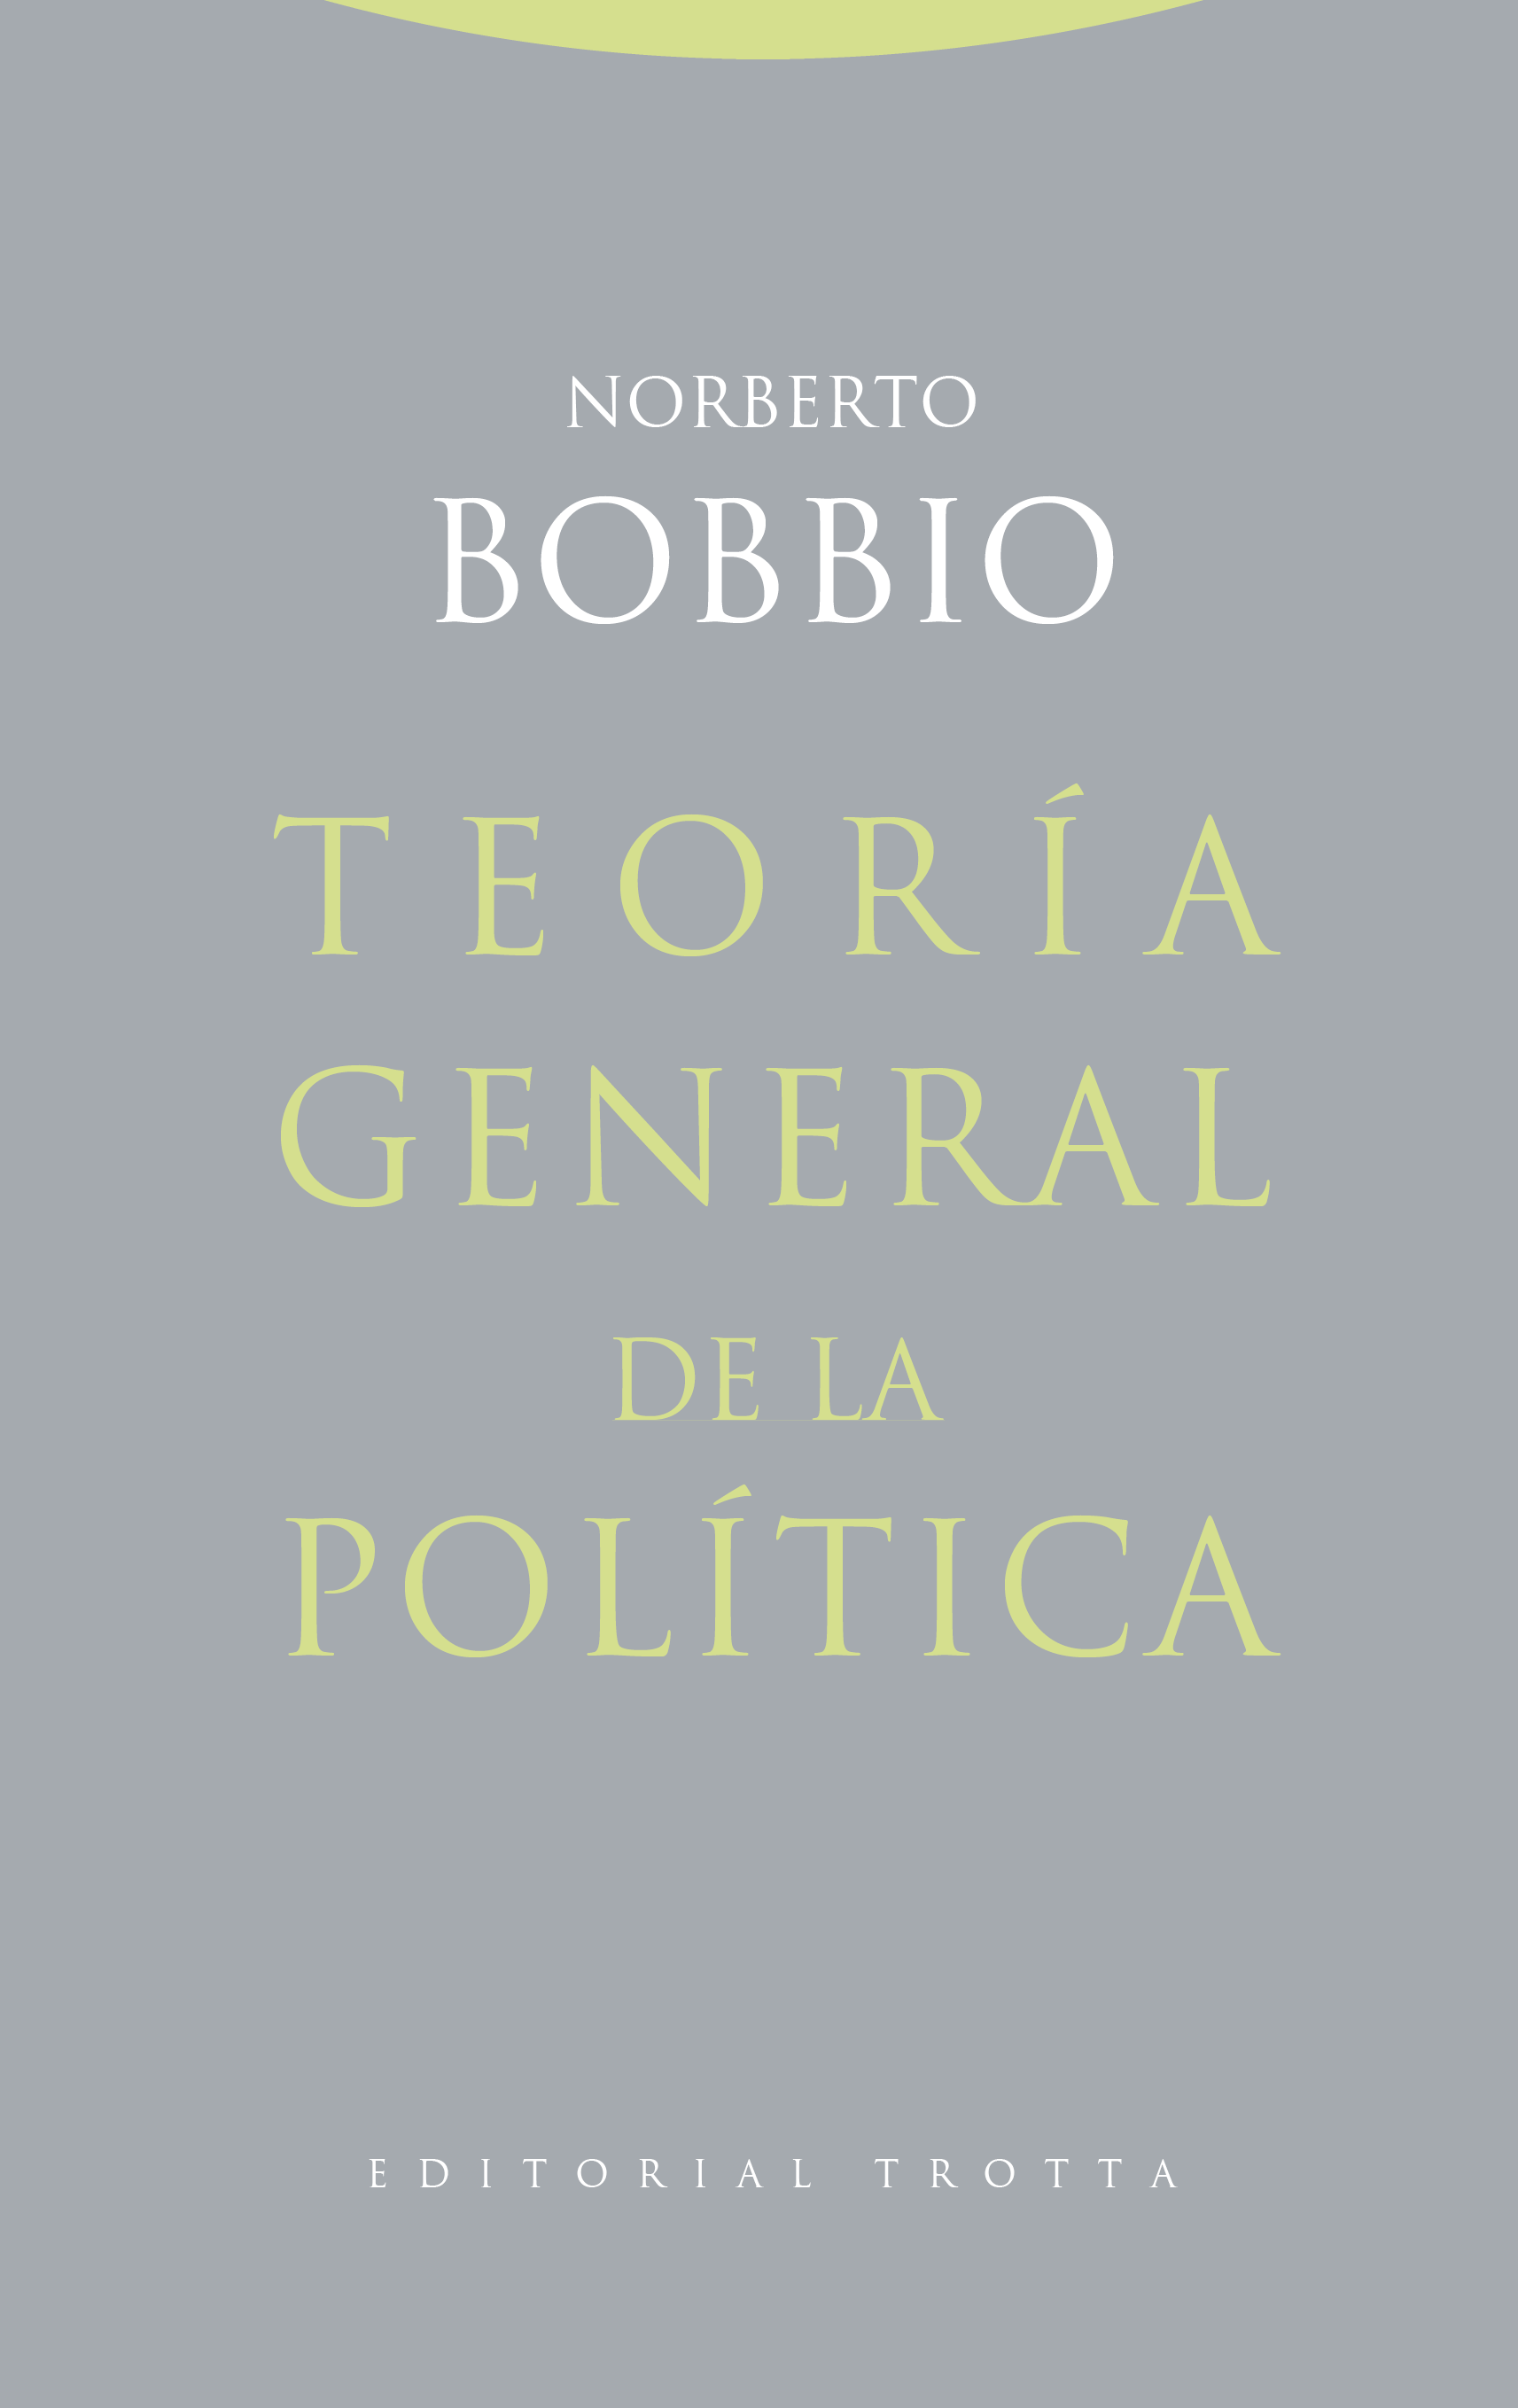 En las últimas décadas, Norberto Bobbio había venido albergando la idea de redactar una "Teoría general de la política"